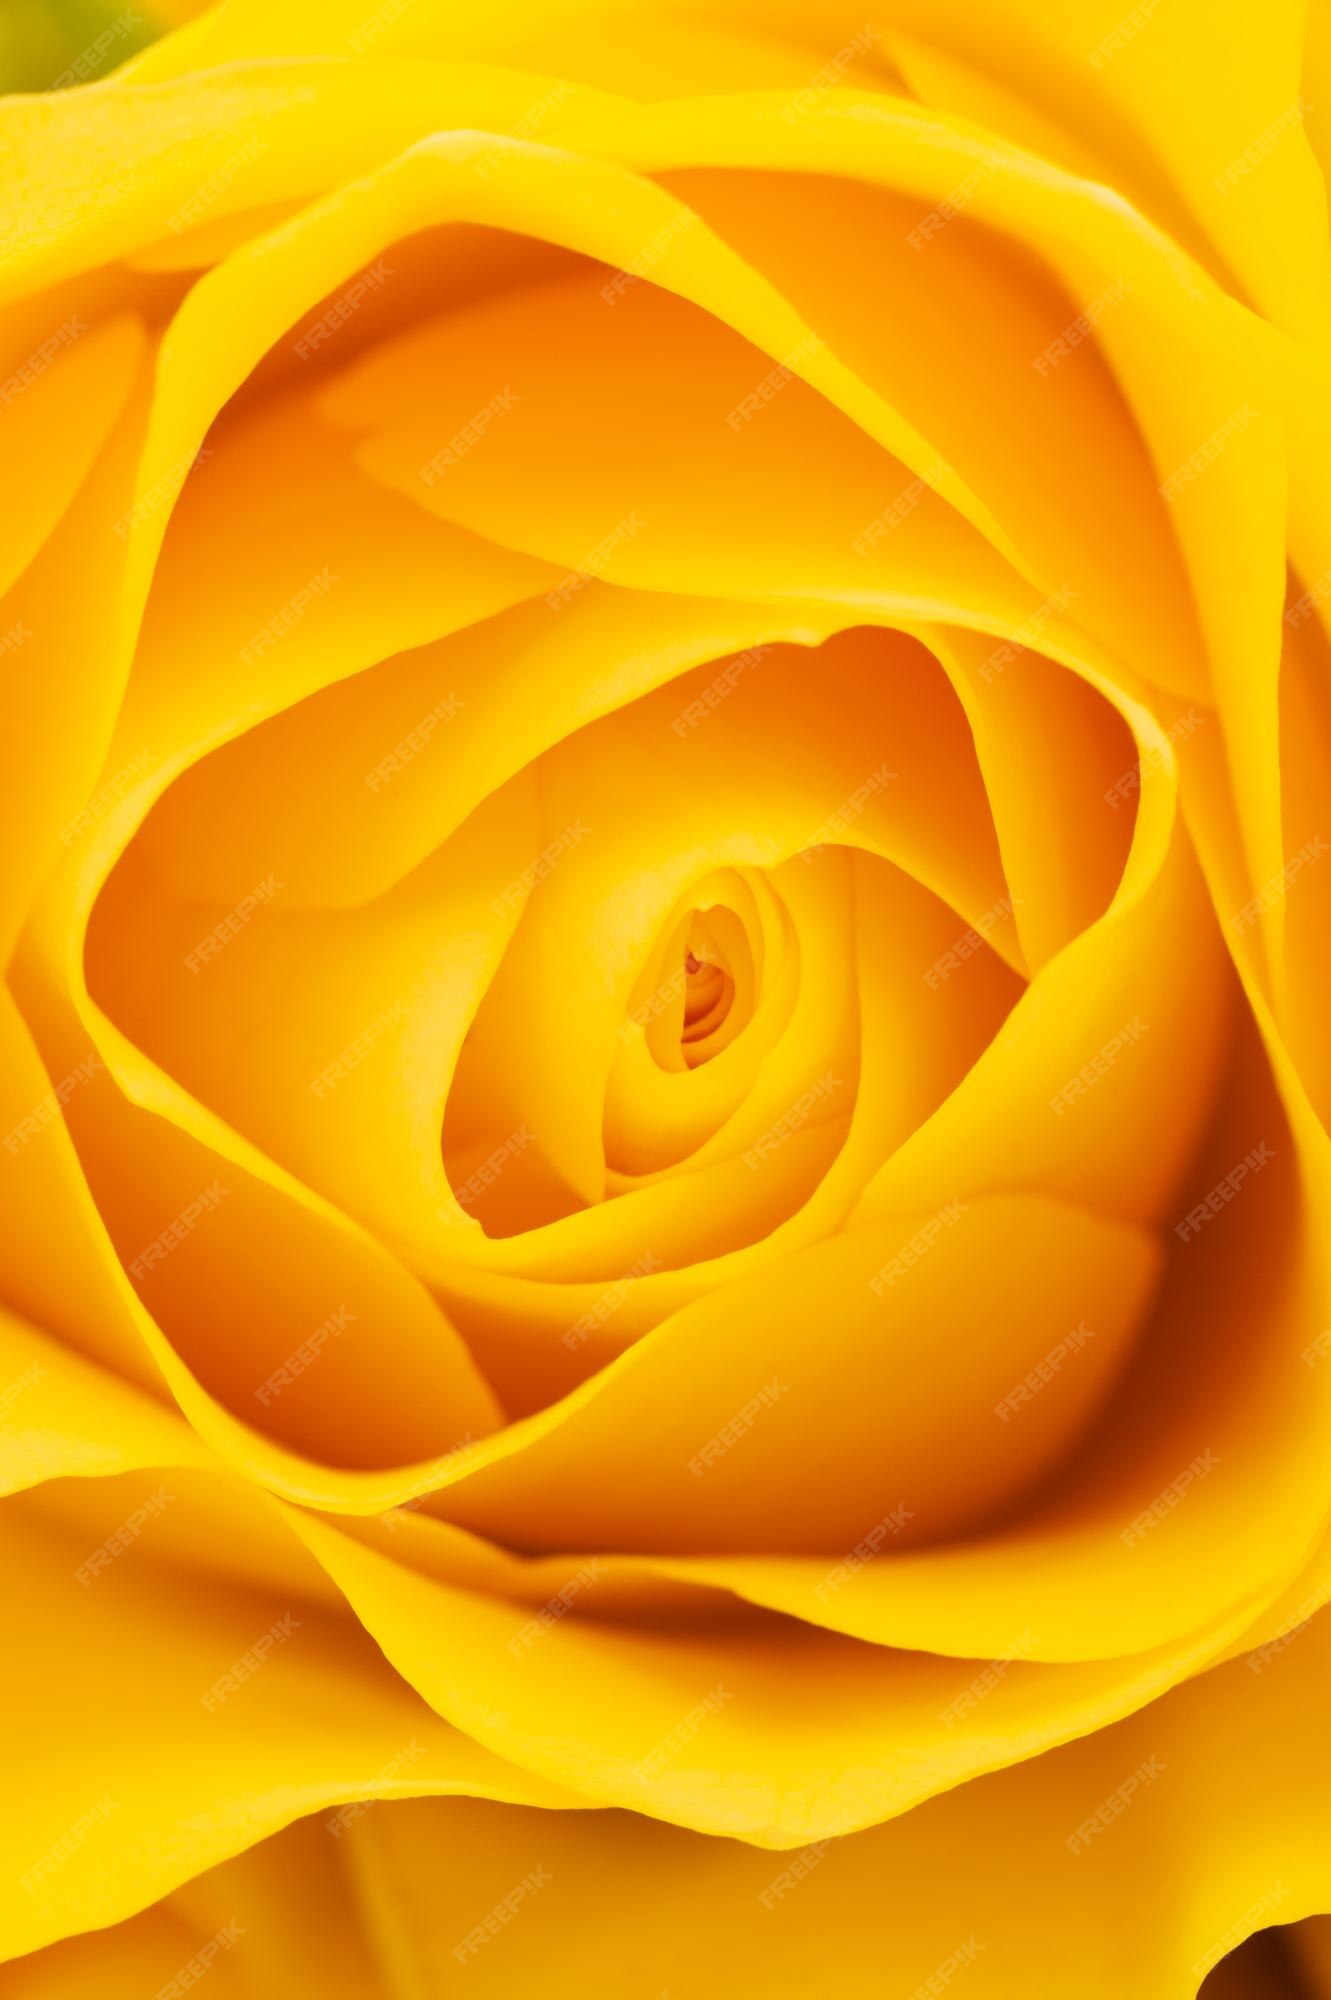 Premium Photo | Yellow rose background